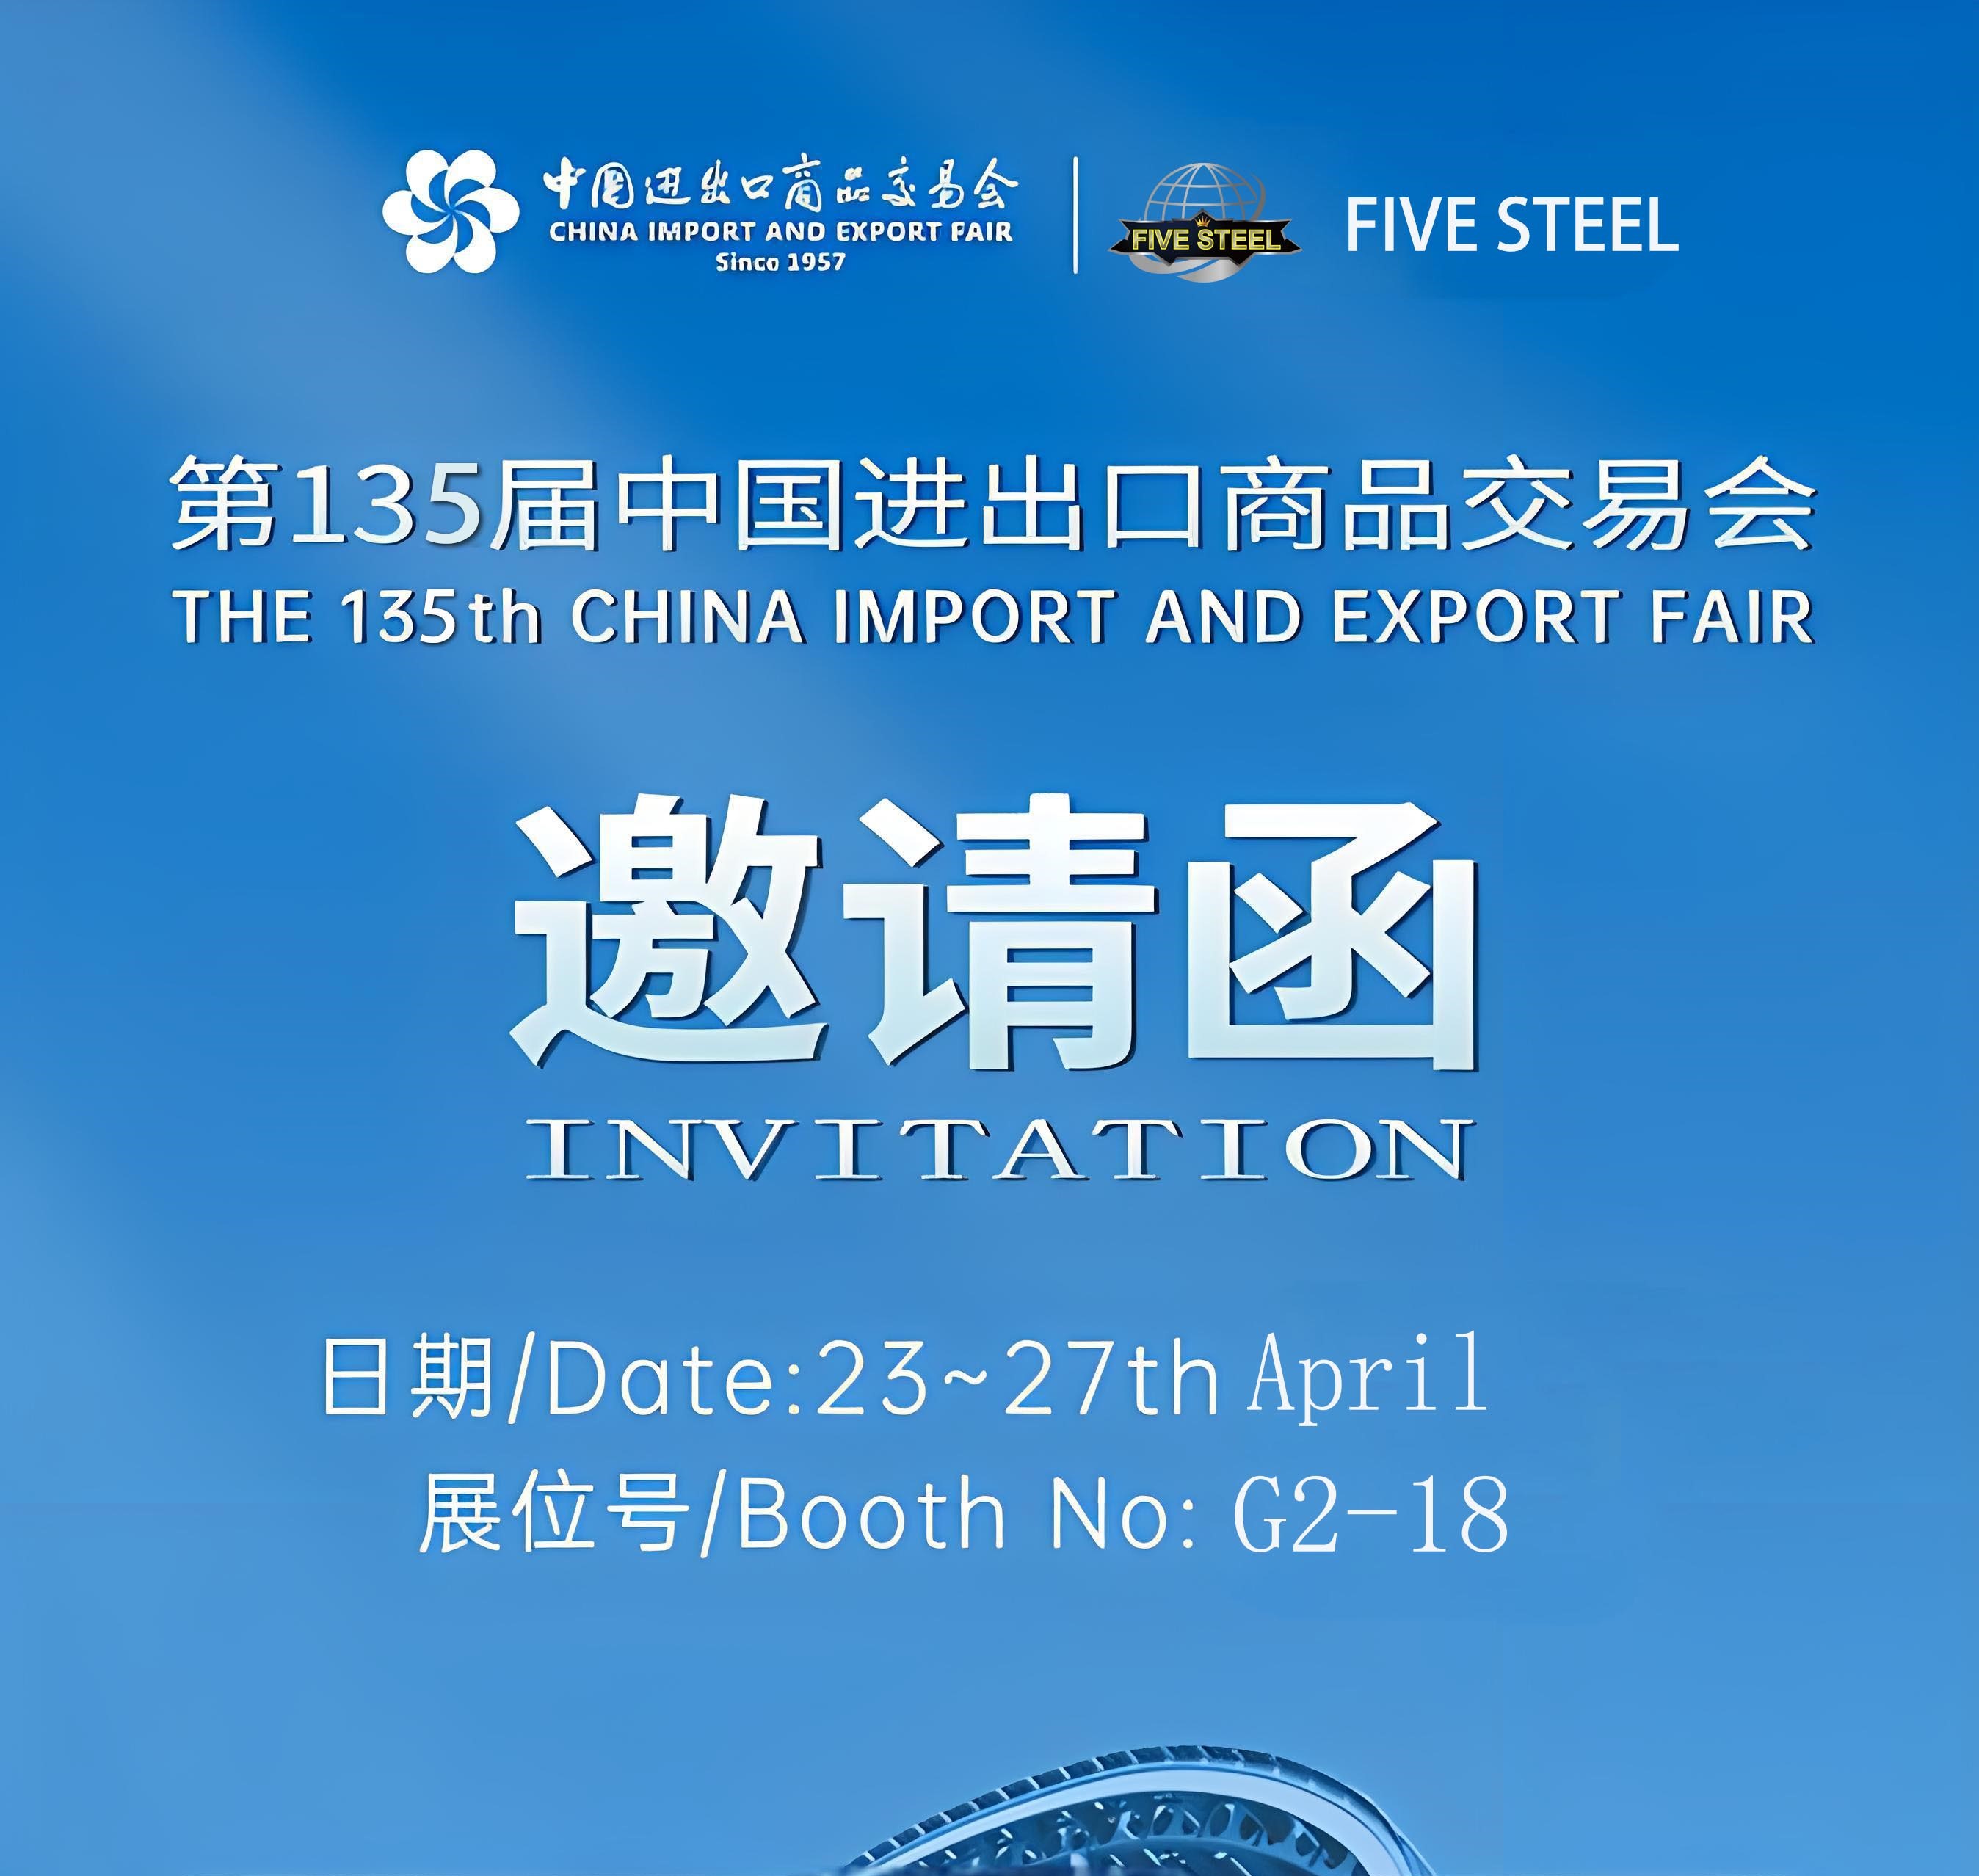 فایو استیل شما را به یکصد و سی و پنجمین نمایشگاه واردات و صادرات چین در سال 2024 دعوت می کند